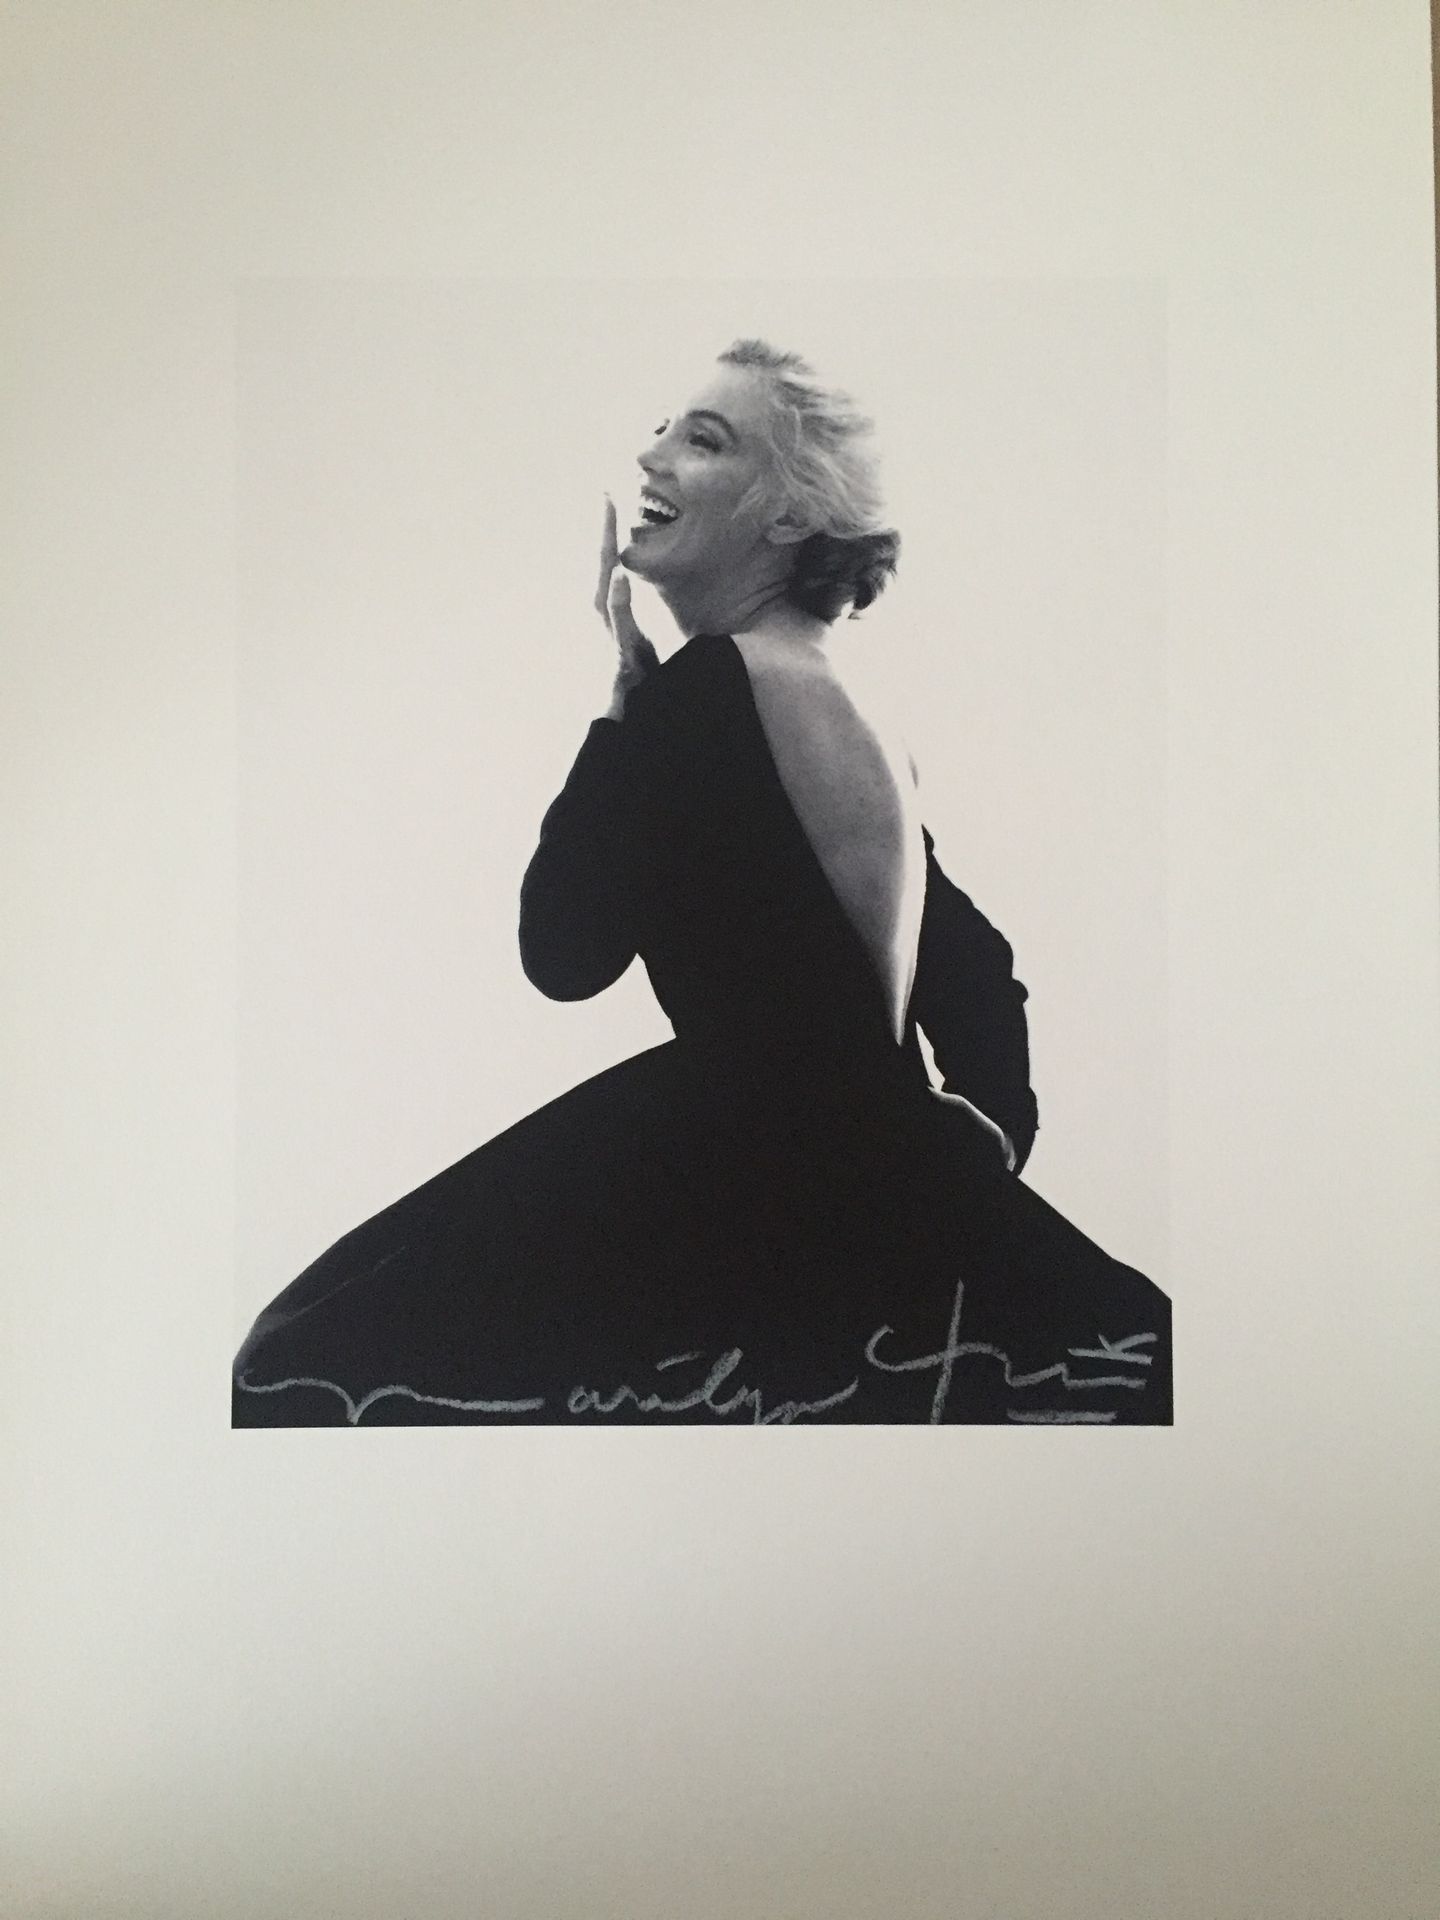 Bert STERN Bert STERN (1929-2013)

Marilyn lachend im schwarzen Kleid, 2011

 

&hellip;